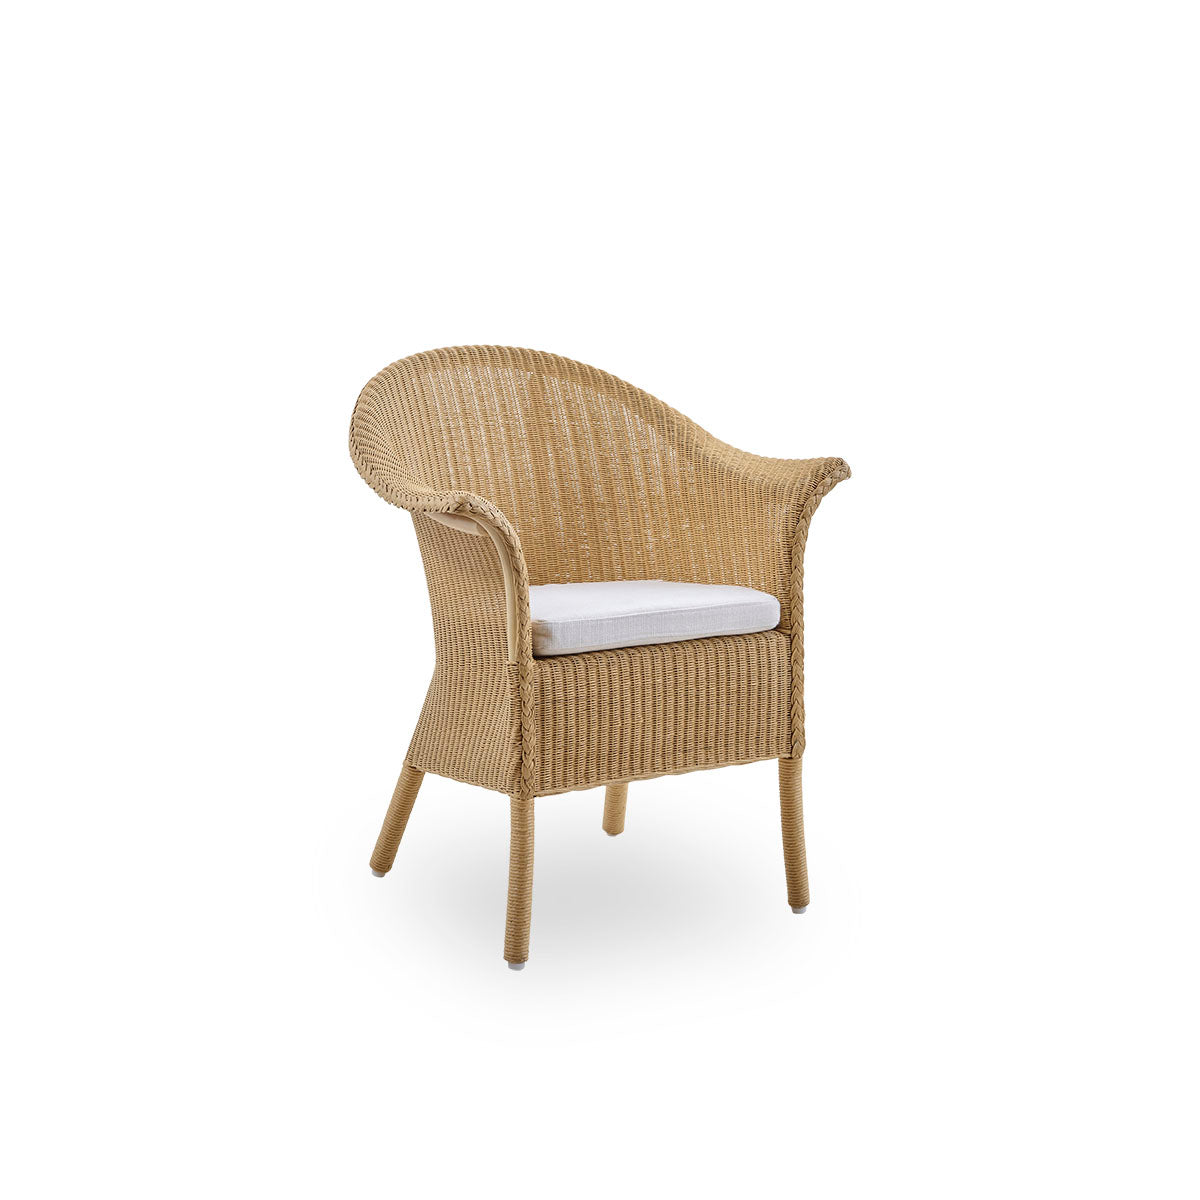 Seat cushion | Classic Chair